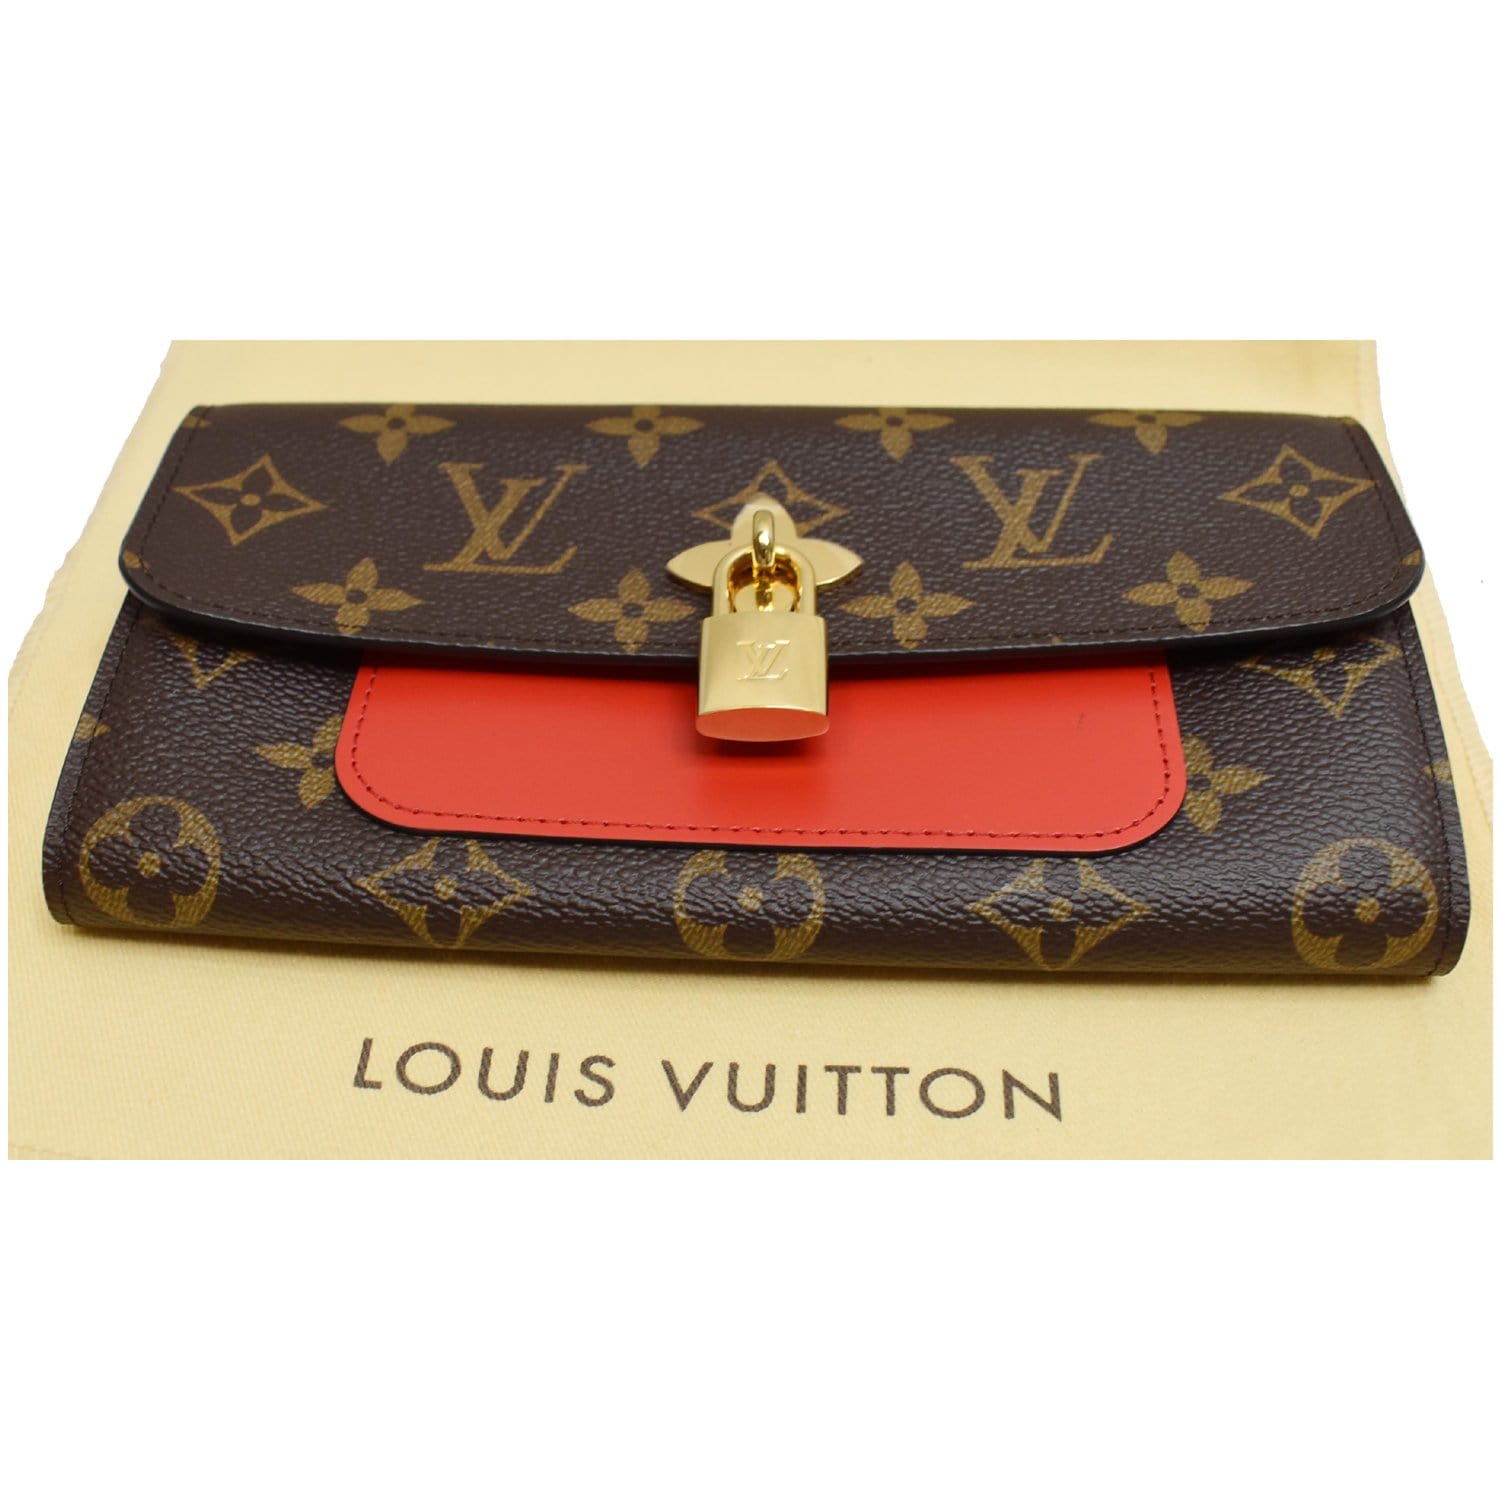 Louis Vuitton Monogram Canvas Clemence Wallet Red Chili M60743  Louis  vuitton monogram, Louis vuitton clemence wallet, Louis vuitton